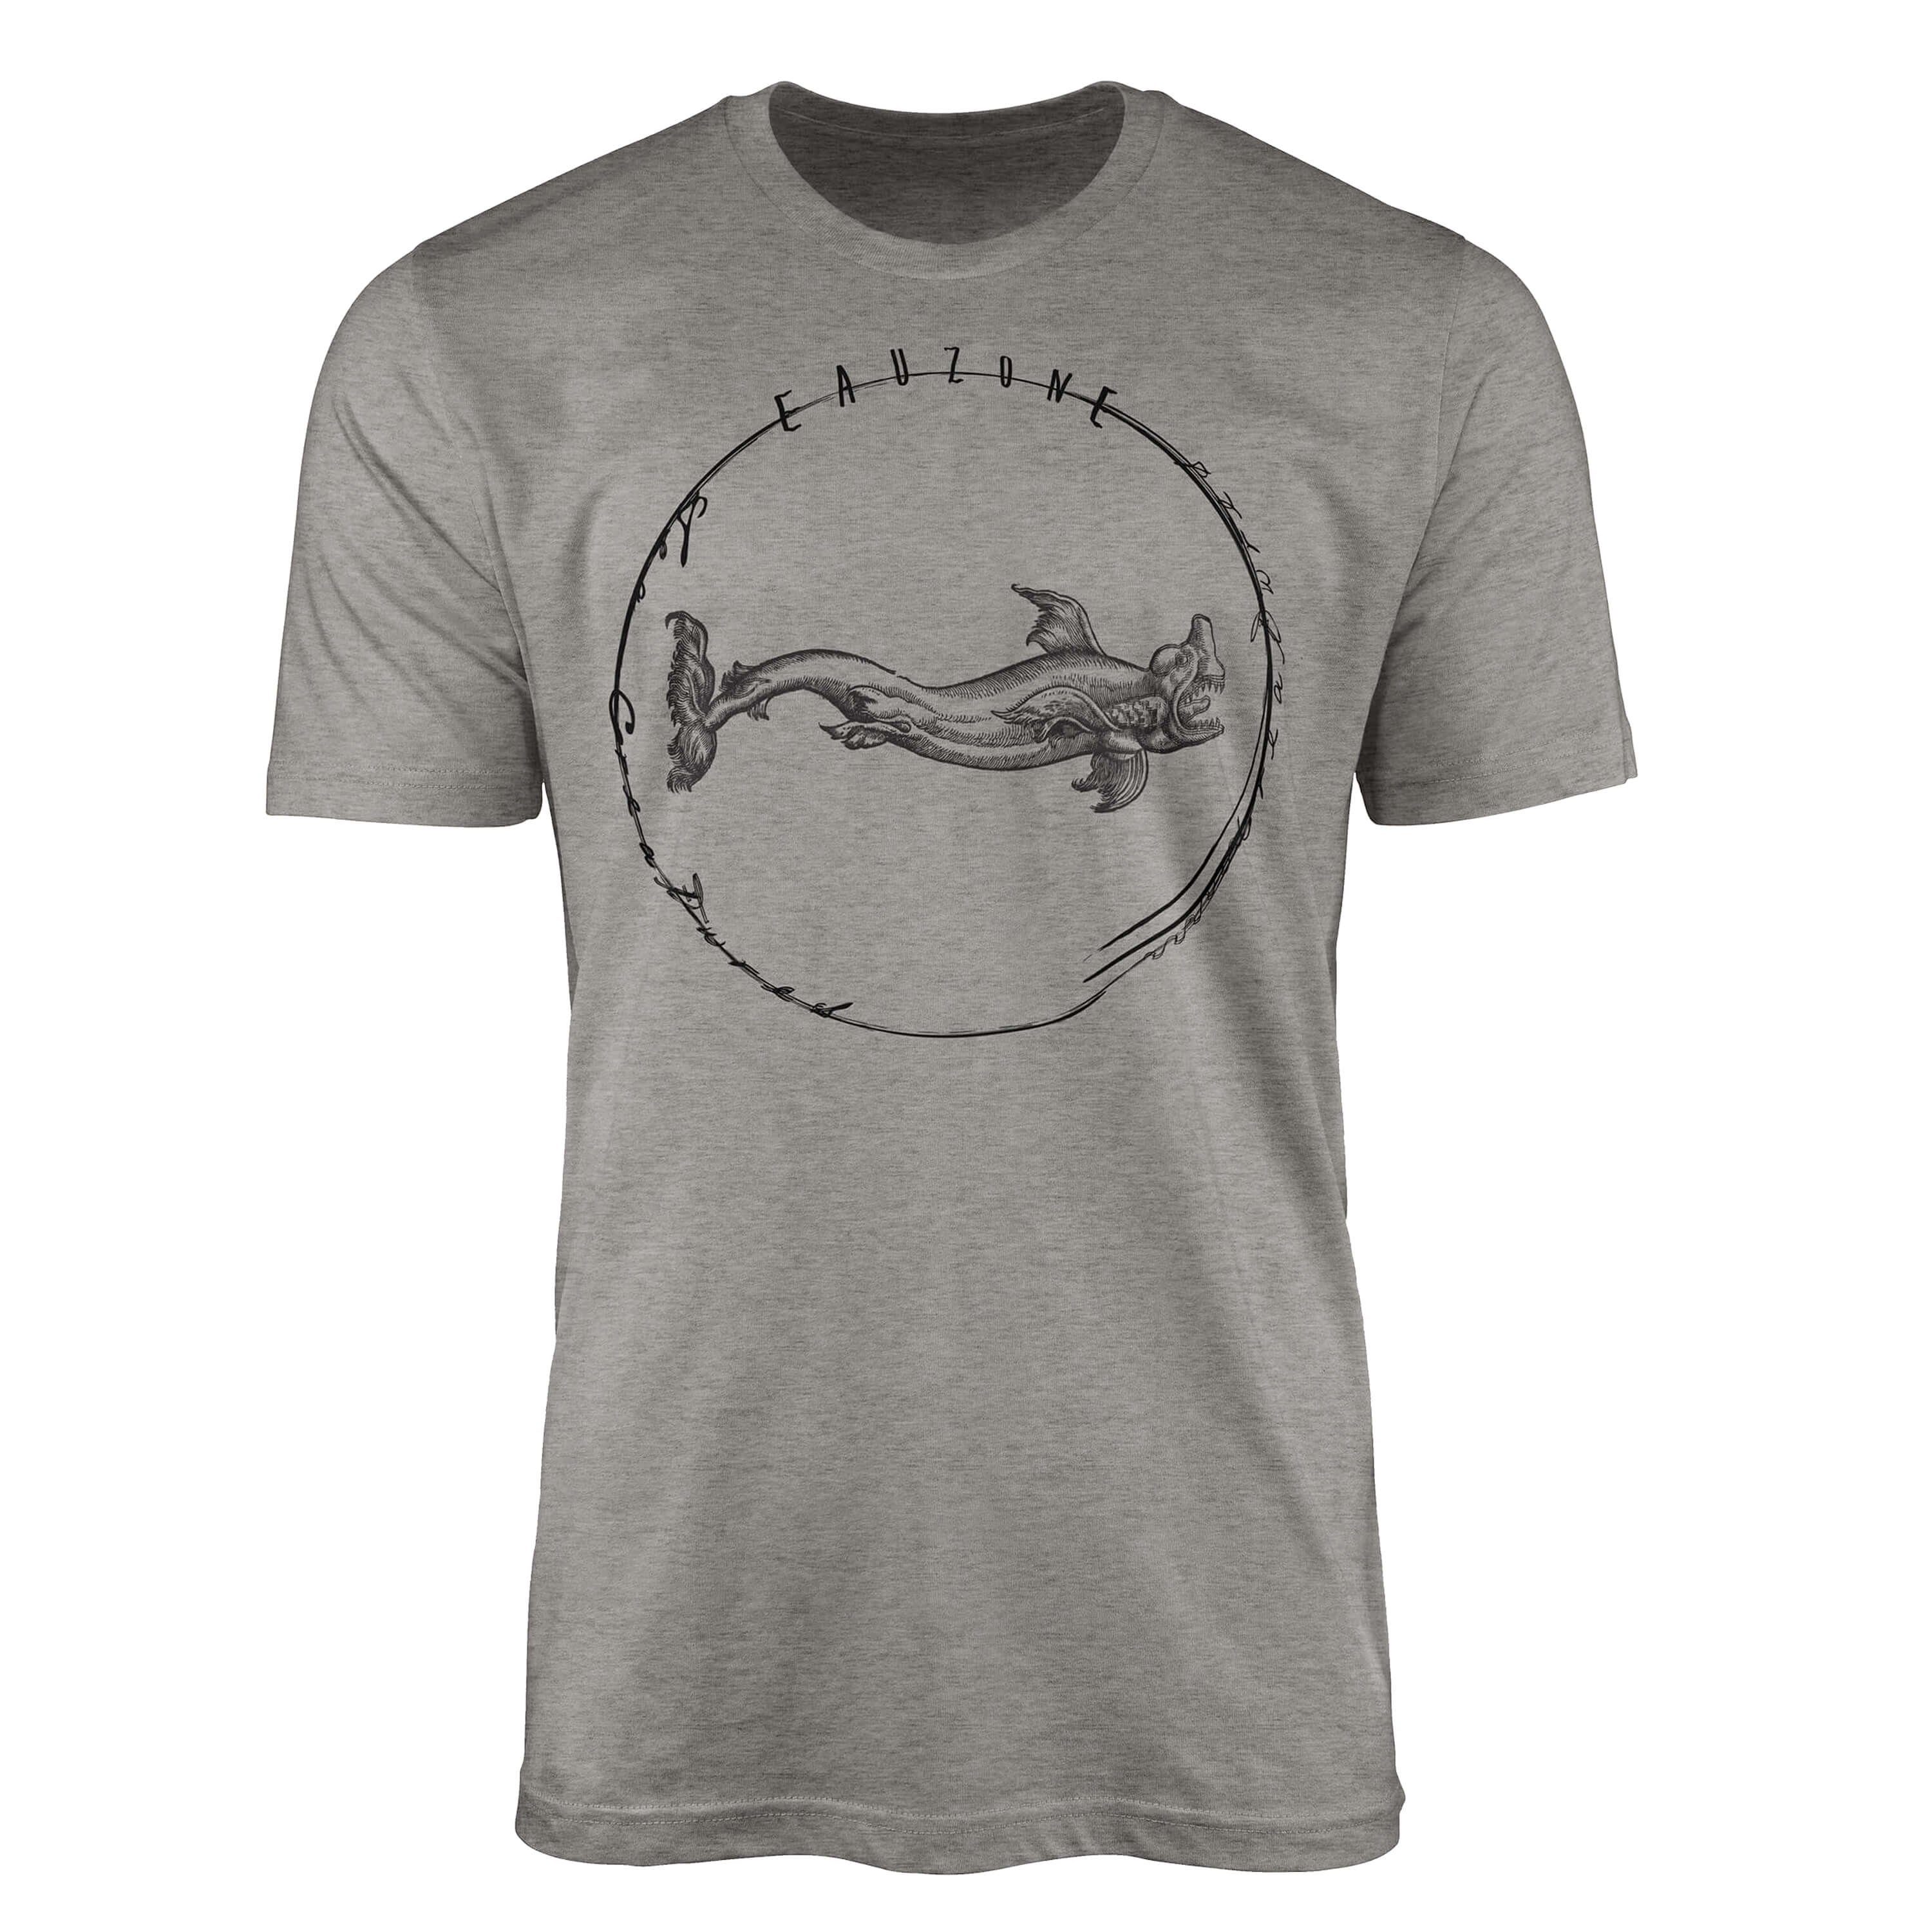 Creatures, Serie: T-Shirt Sea feine sportlicher Fische und Art - Tiefsee Schnitt / Struktur Ash Sea T-Shirt Sinus 064